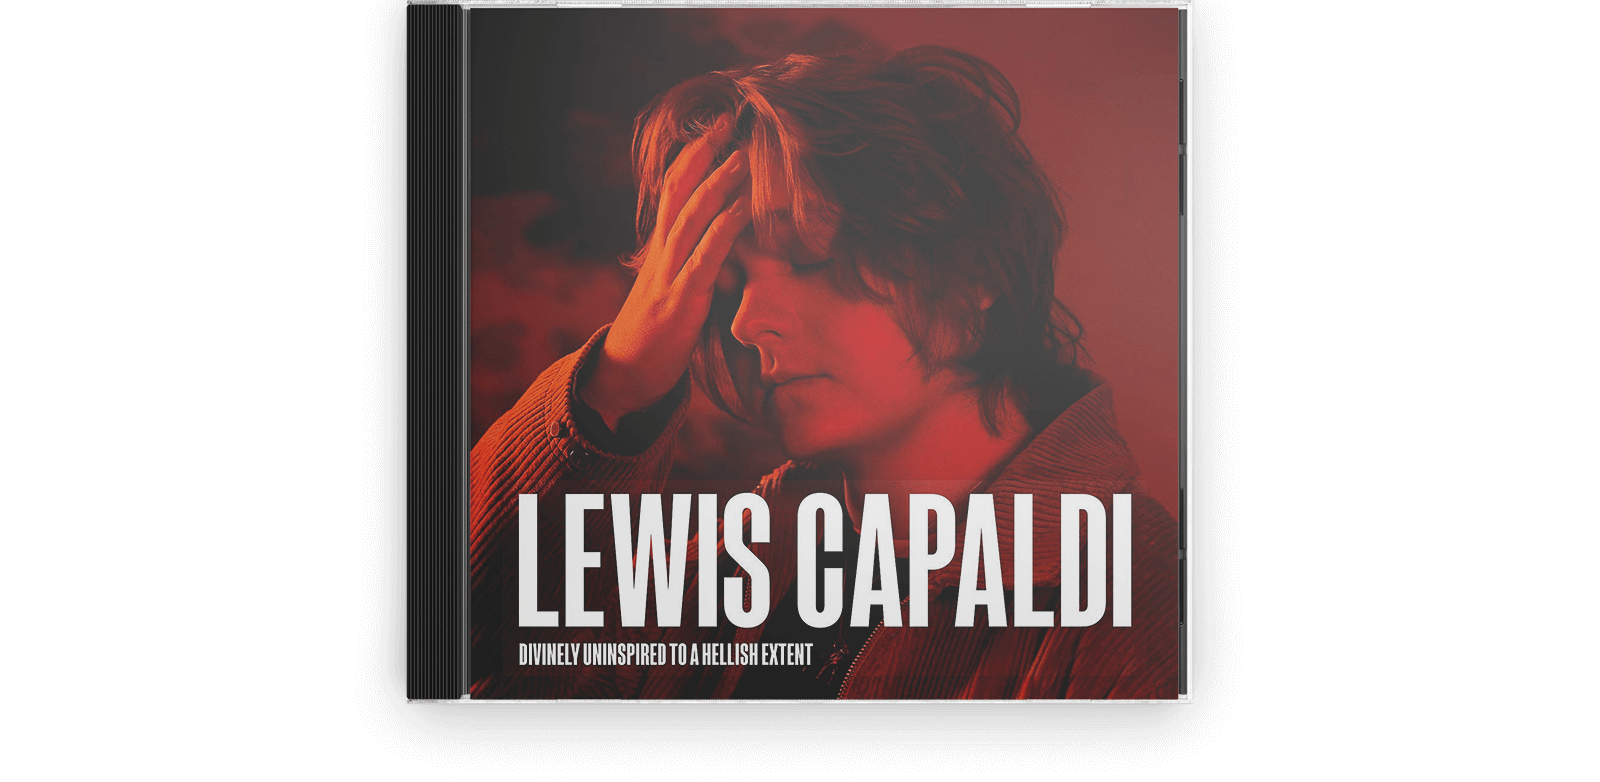 CD, Lewis Capaldi